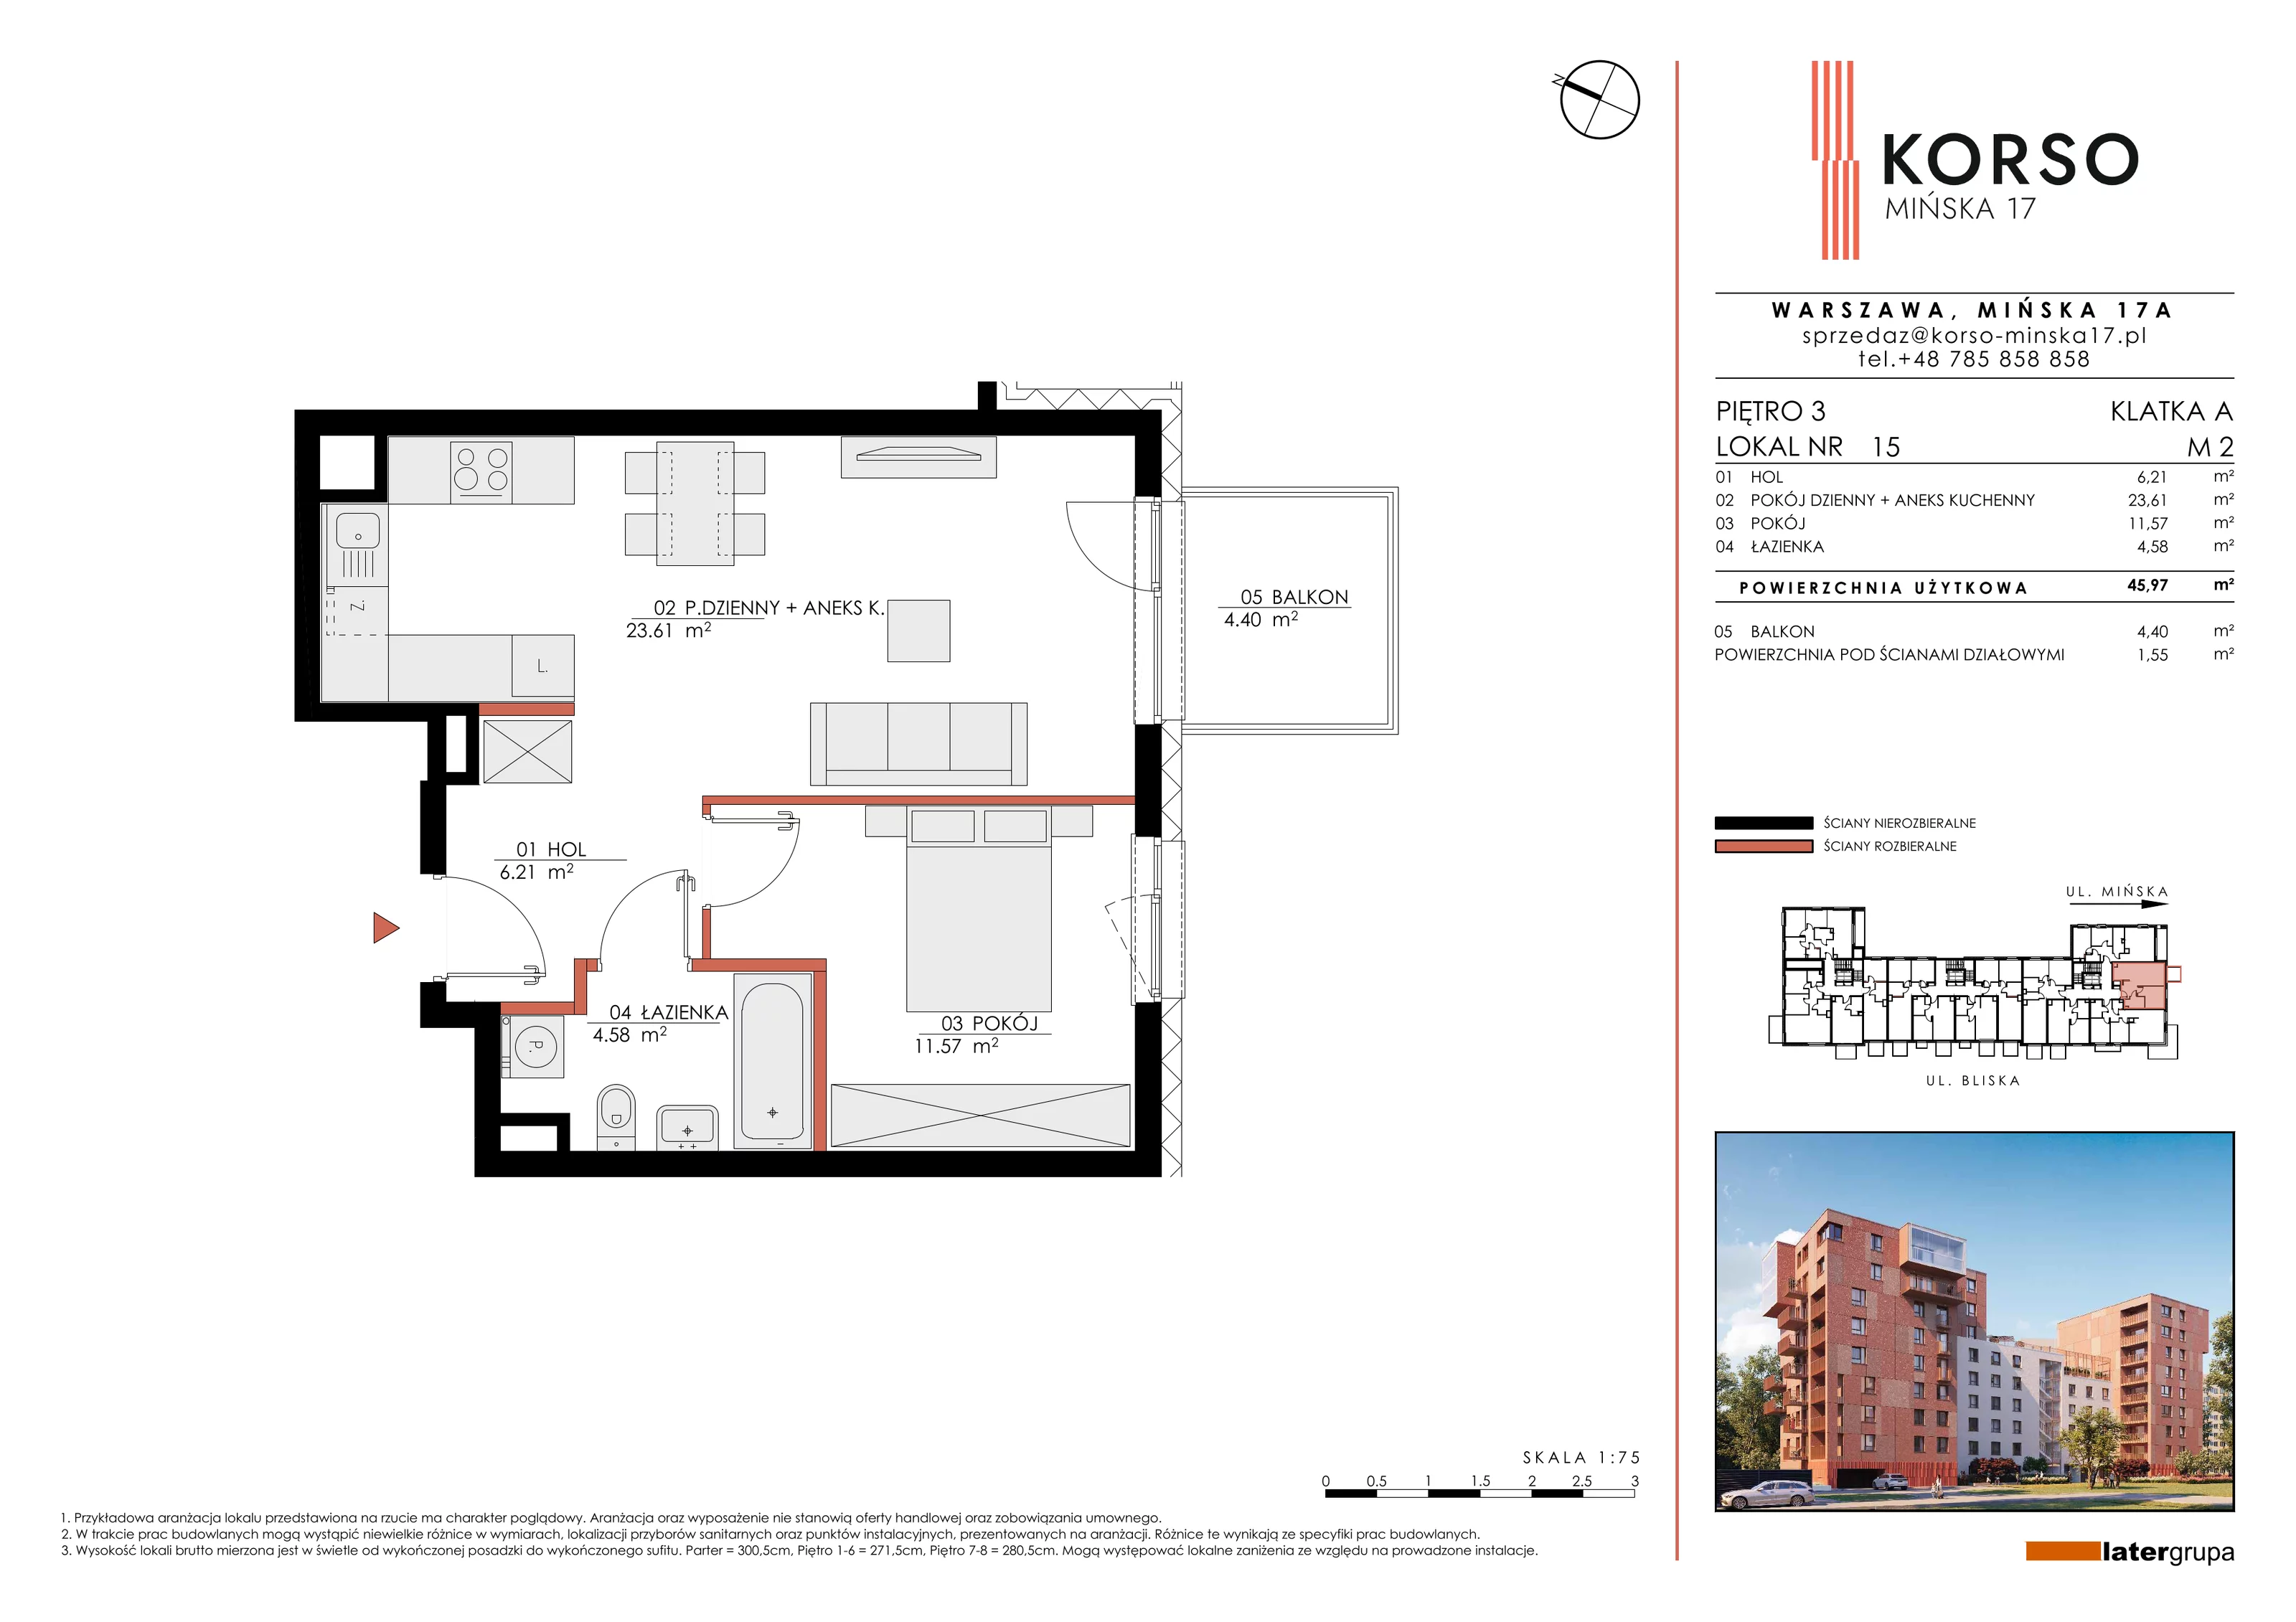 Mieszkanie 45,97 m², piętro 3, oferta nr 15, KORSO Mińska 17, Warszawa, Praga Południe, Kamionek, ul. Mińska 17